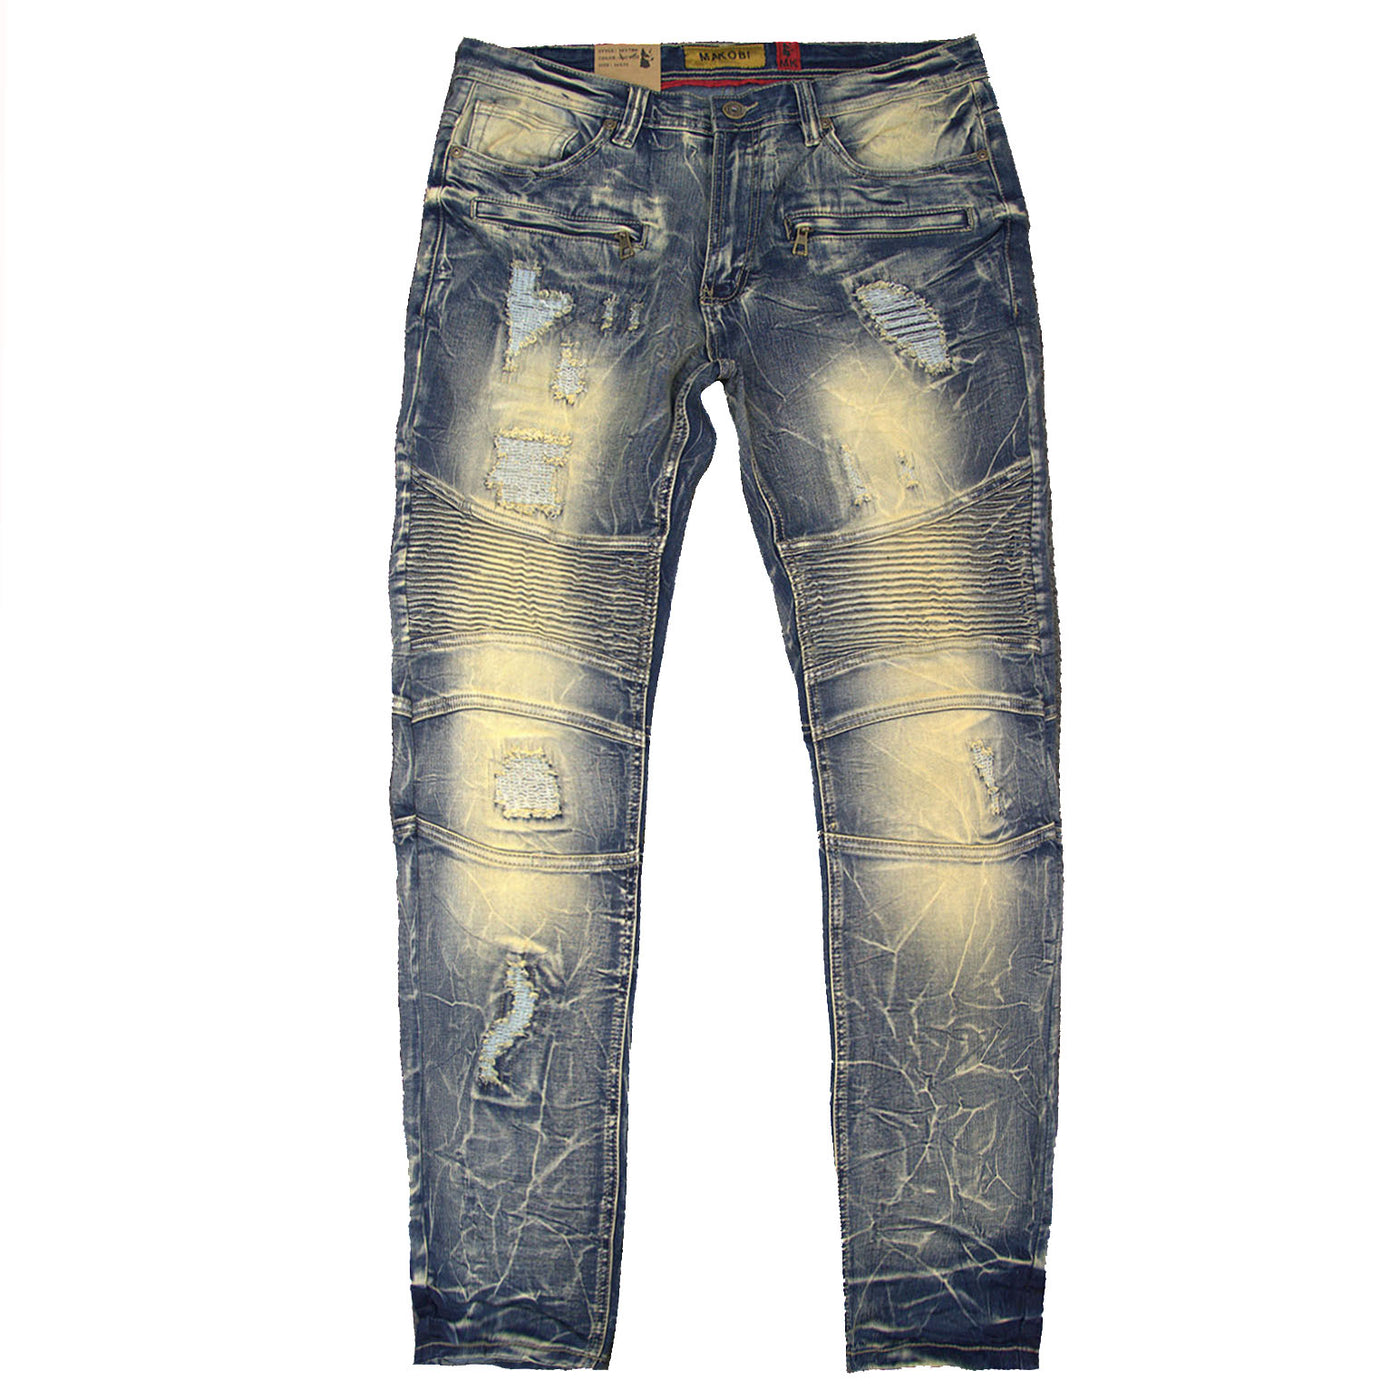 M1786 Makobi Prado Biker Jeans with Rip & Repair - Dirt Wash